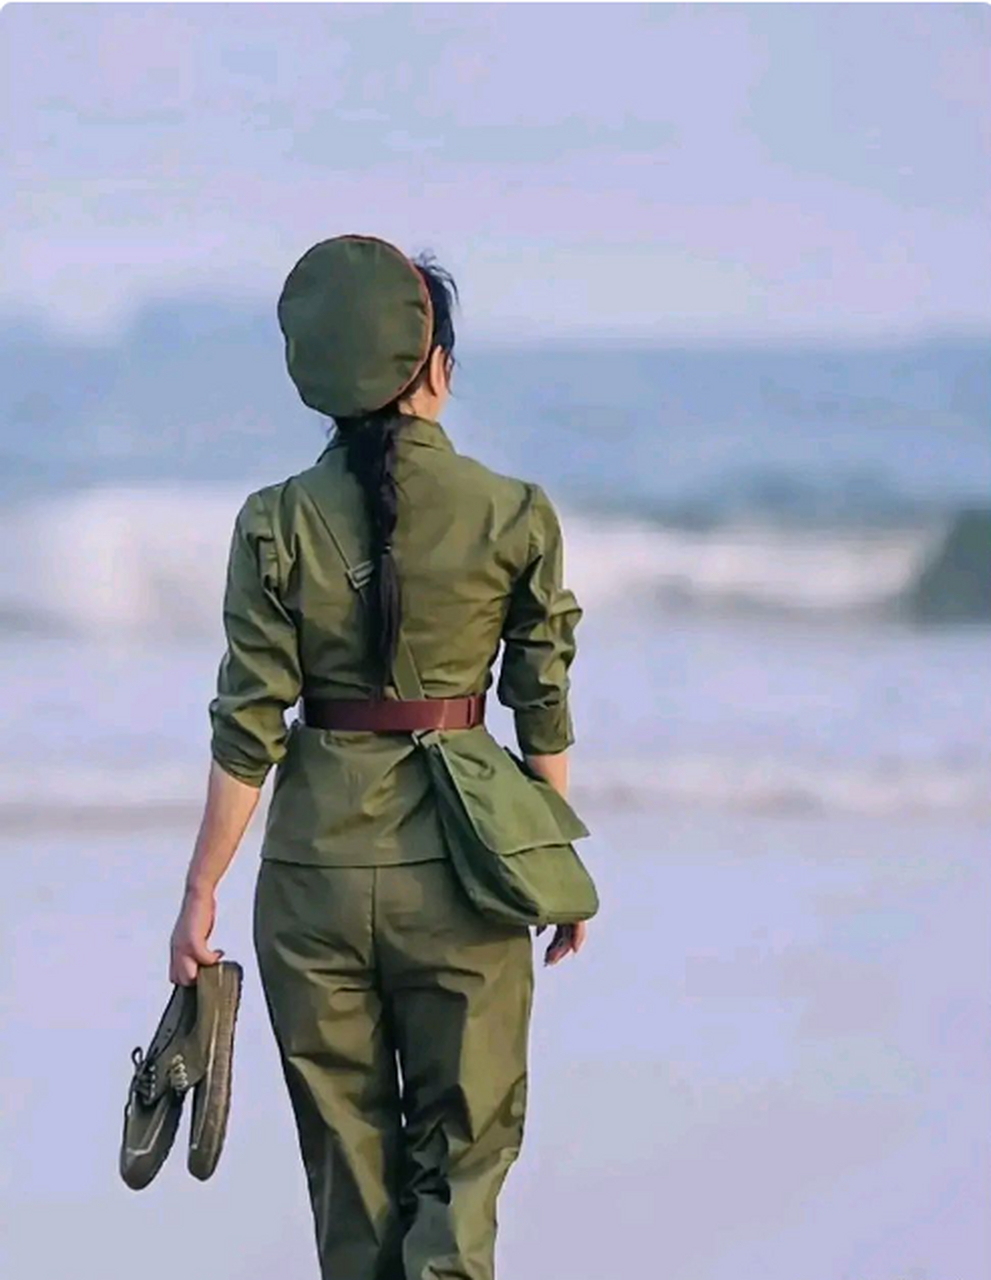 那个穿着65式军装的女军人,真的是美得惊人